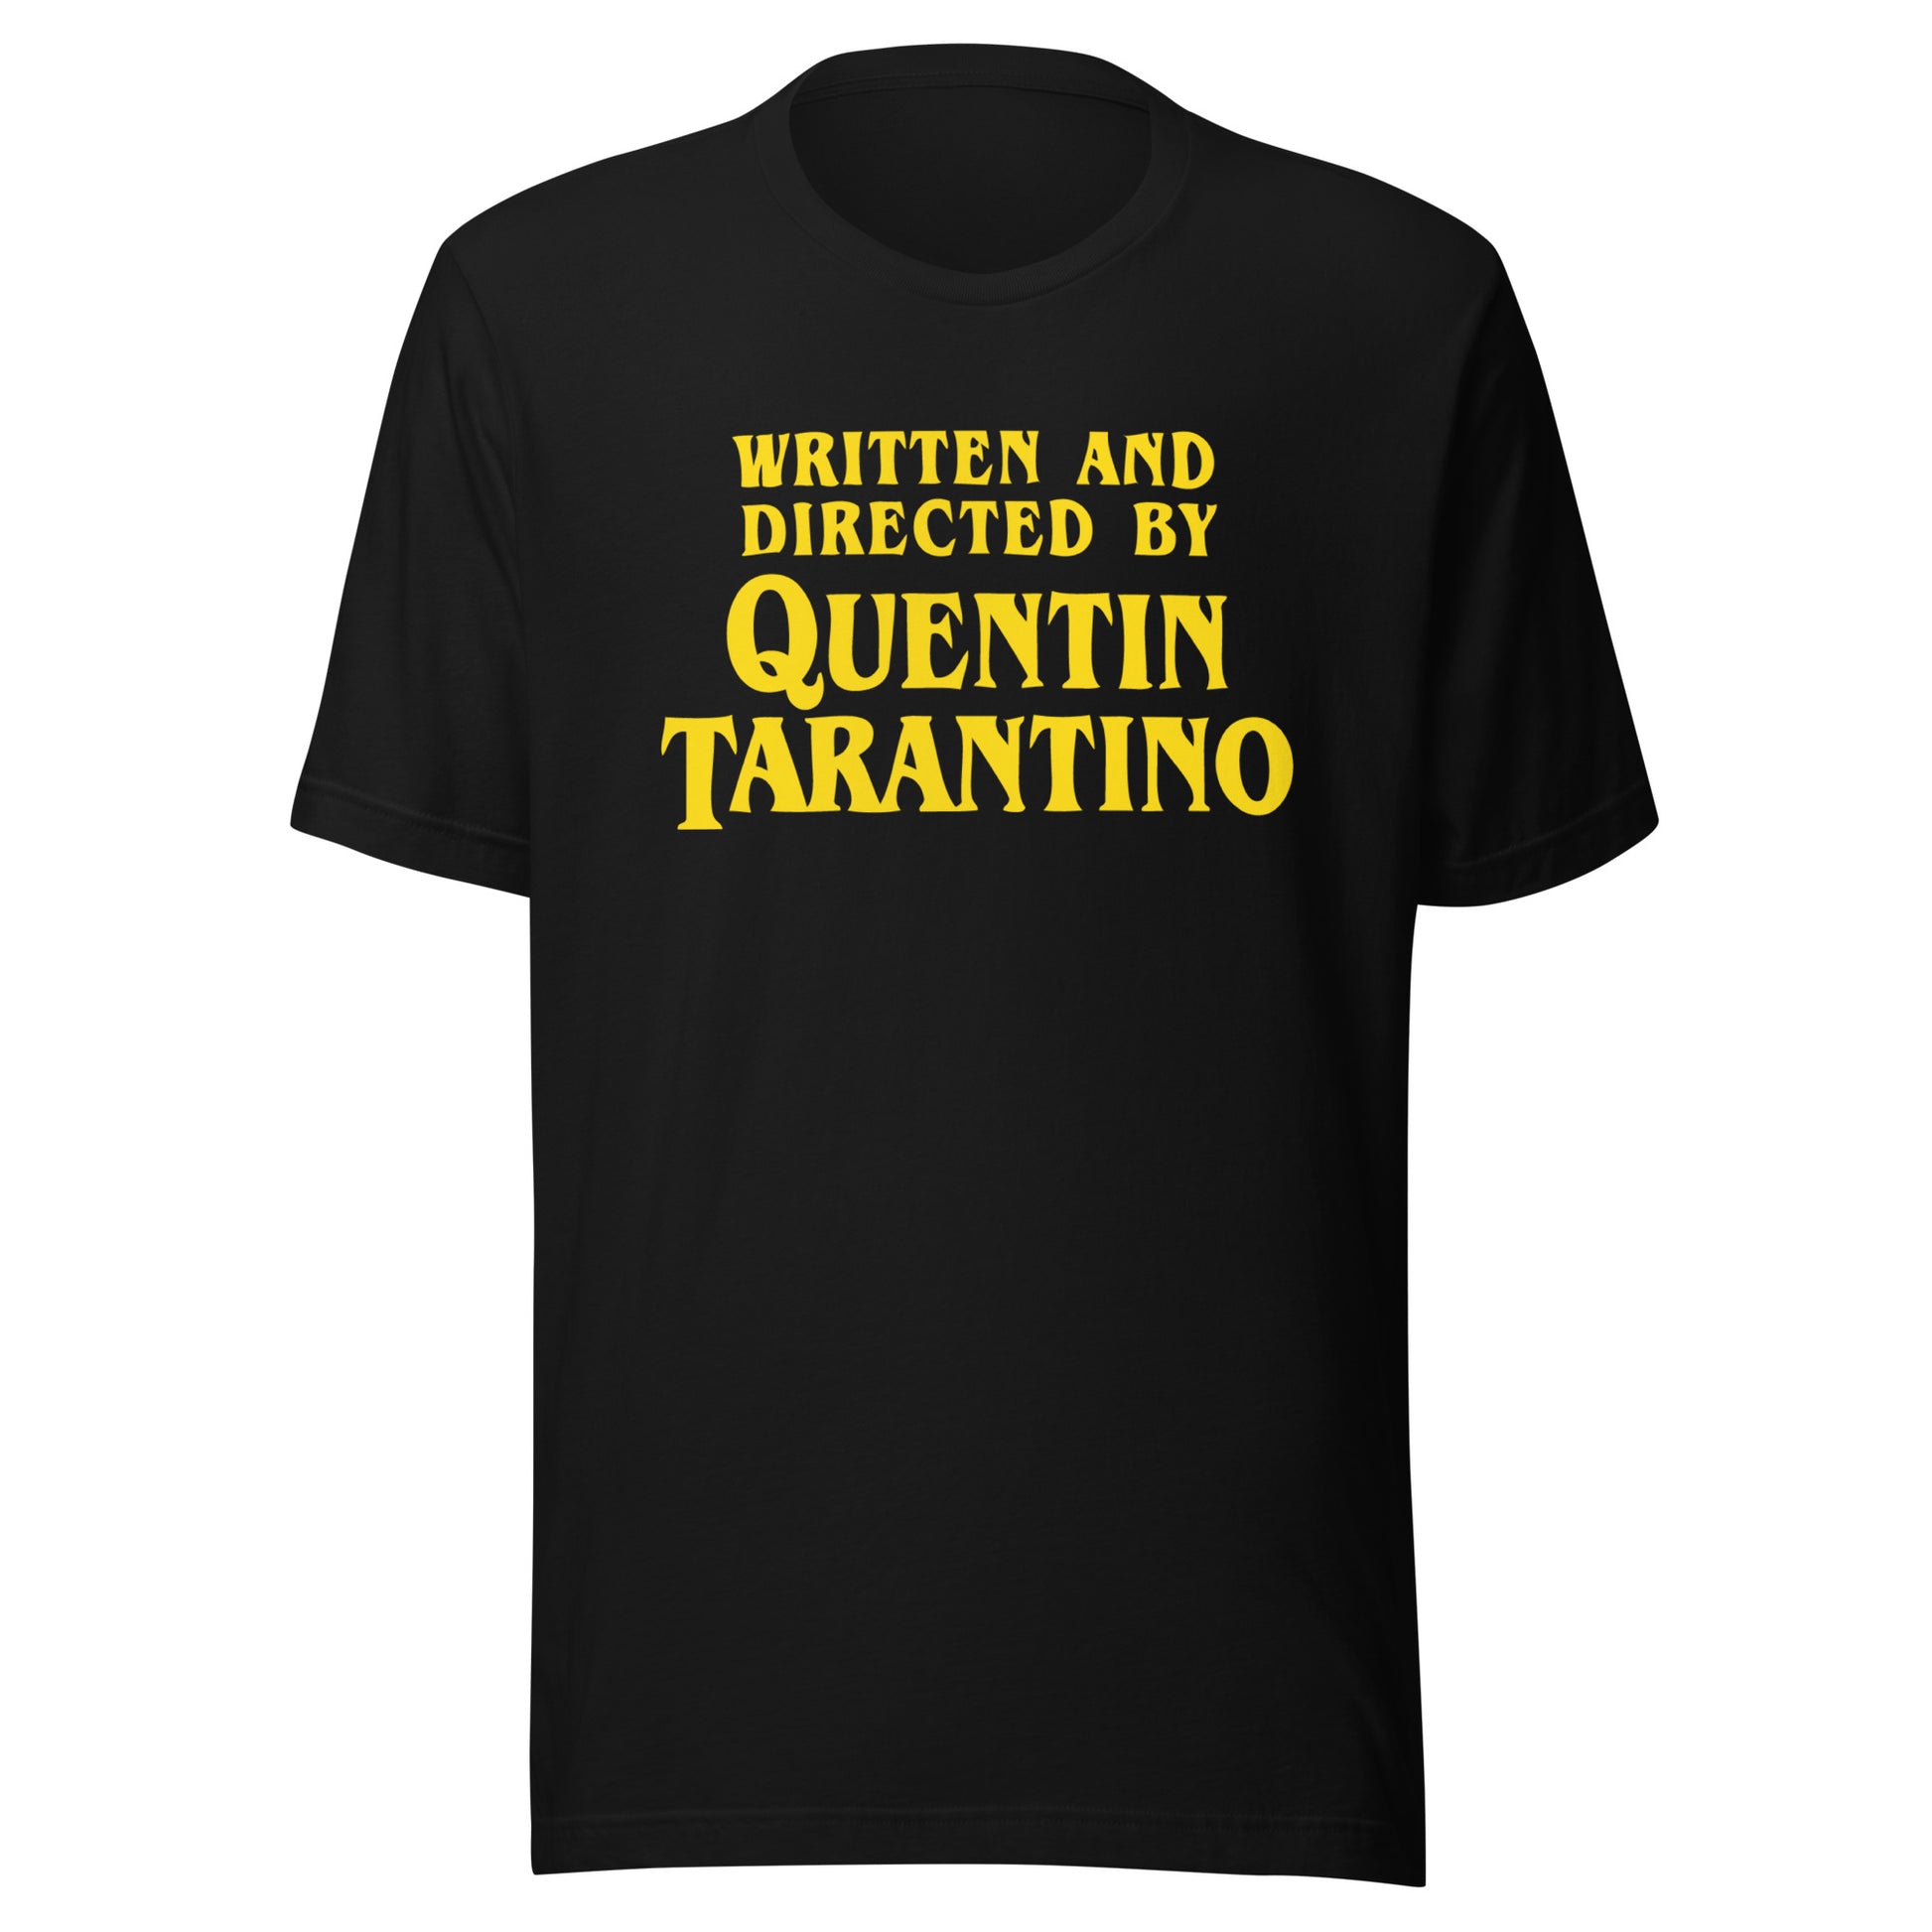 Camiseta Quentin Tarantino, nuestras opciones de playeras son Unisex. disponible en Superstar. Compra y envíos internacionales. compra online.